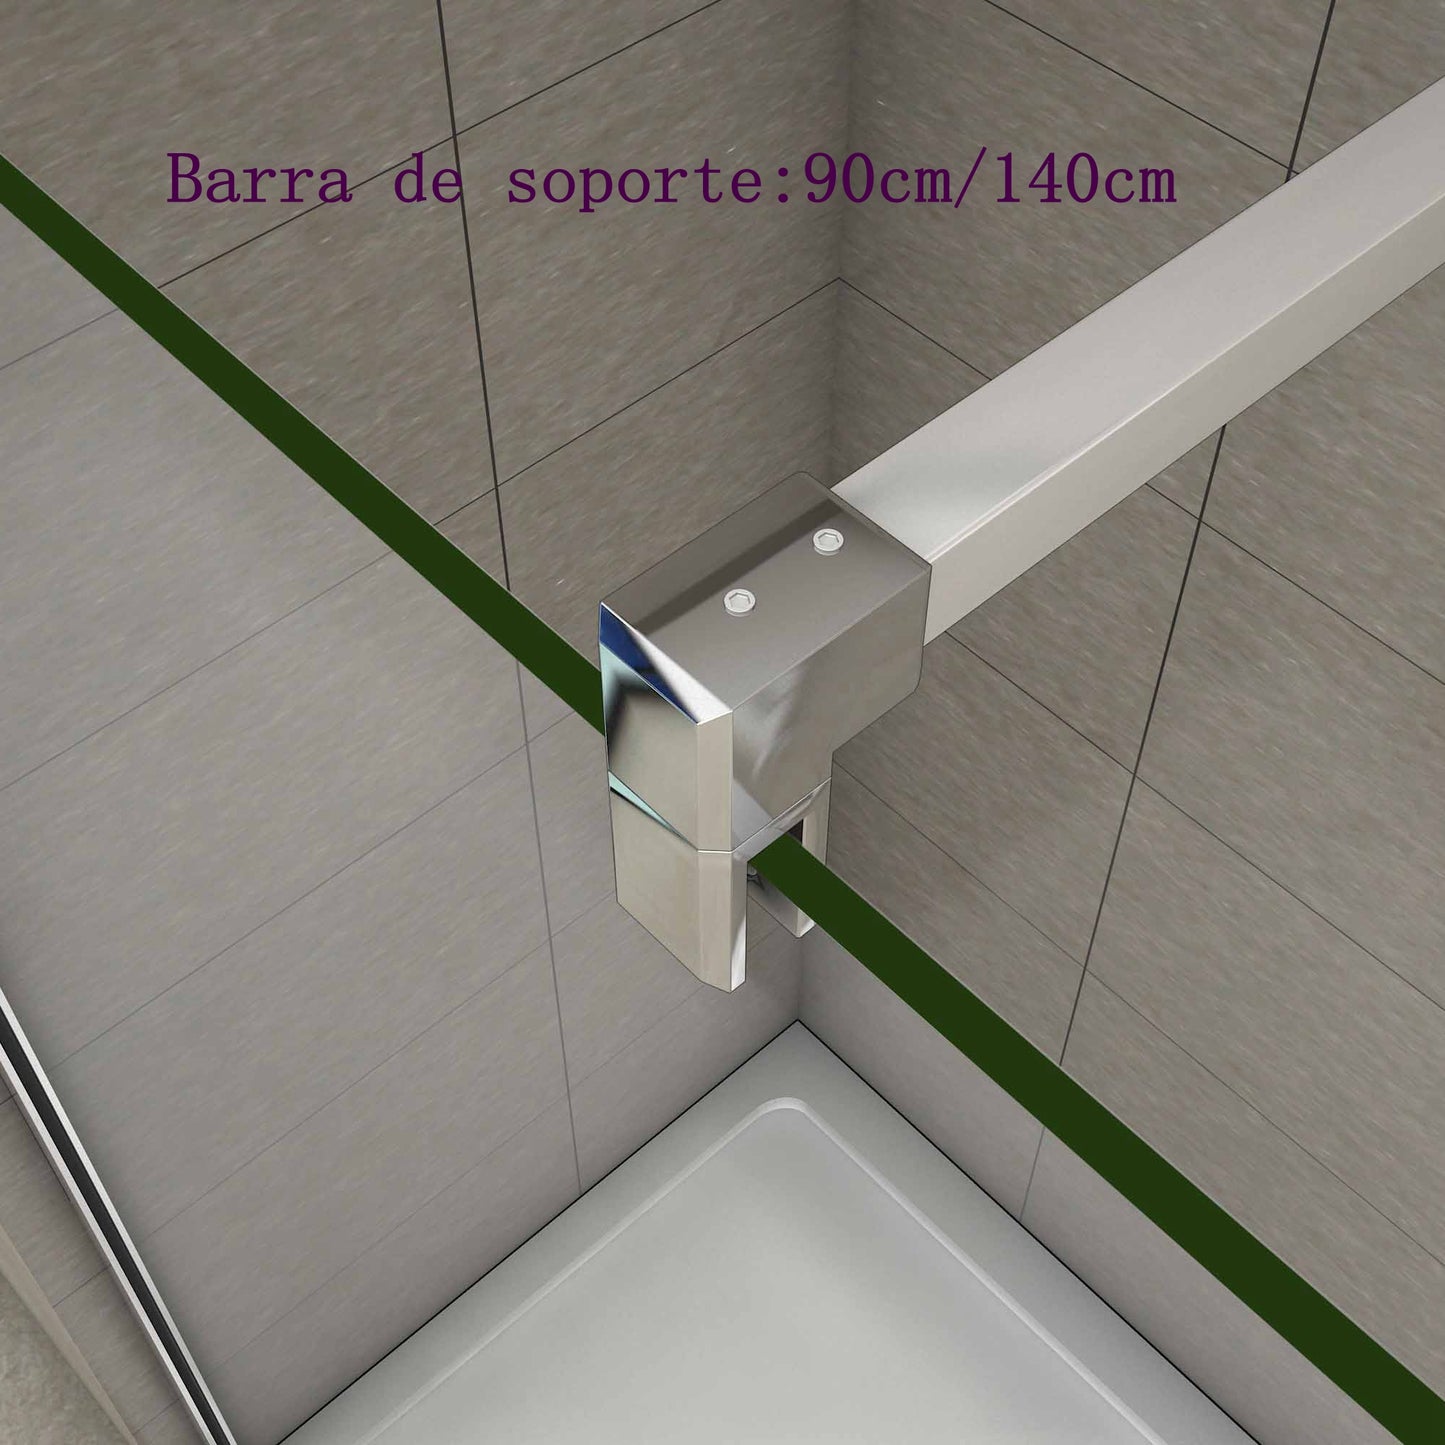 Mamparas de Ducha Pantalla Panel Fijo, Vidrio tratamiento antical 8mm + Barra de soporte